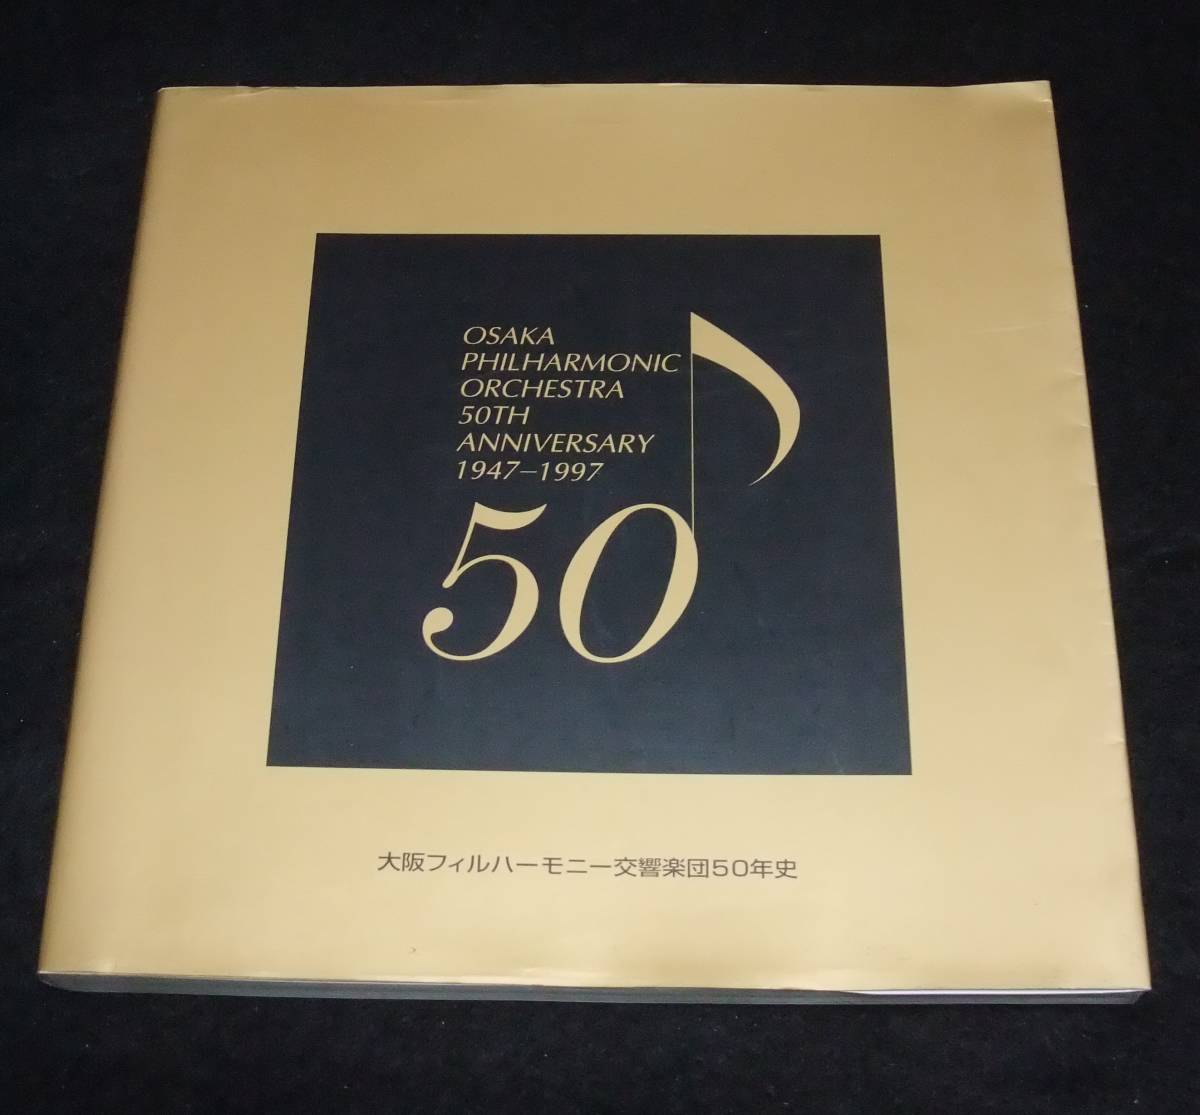 『大阪フィルハーモニー交響楽団50年史』